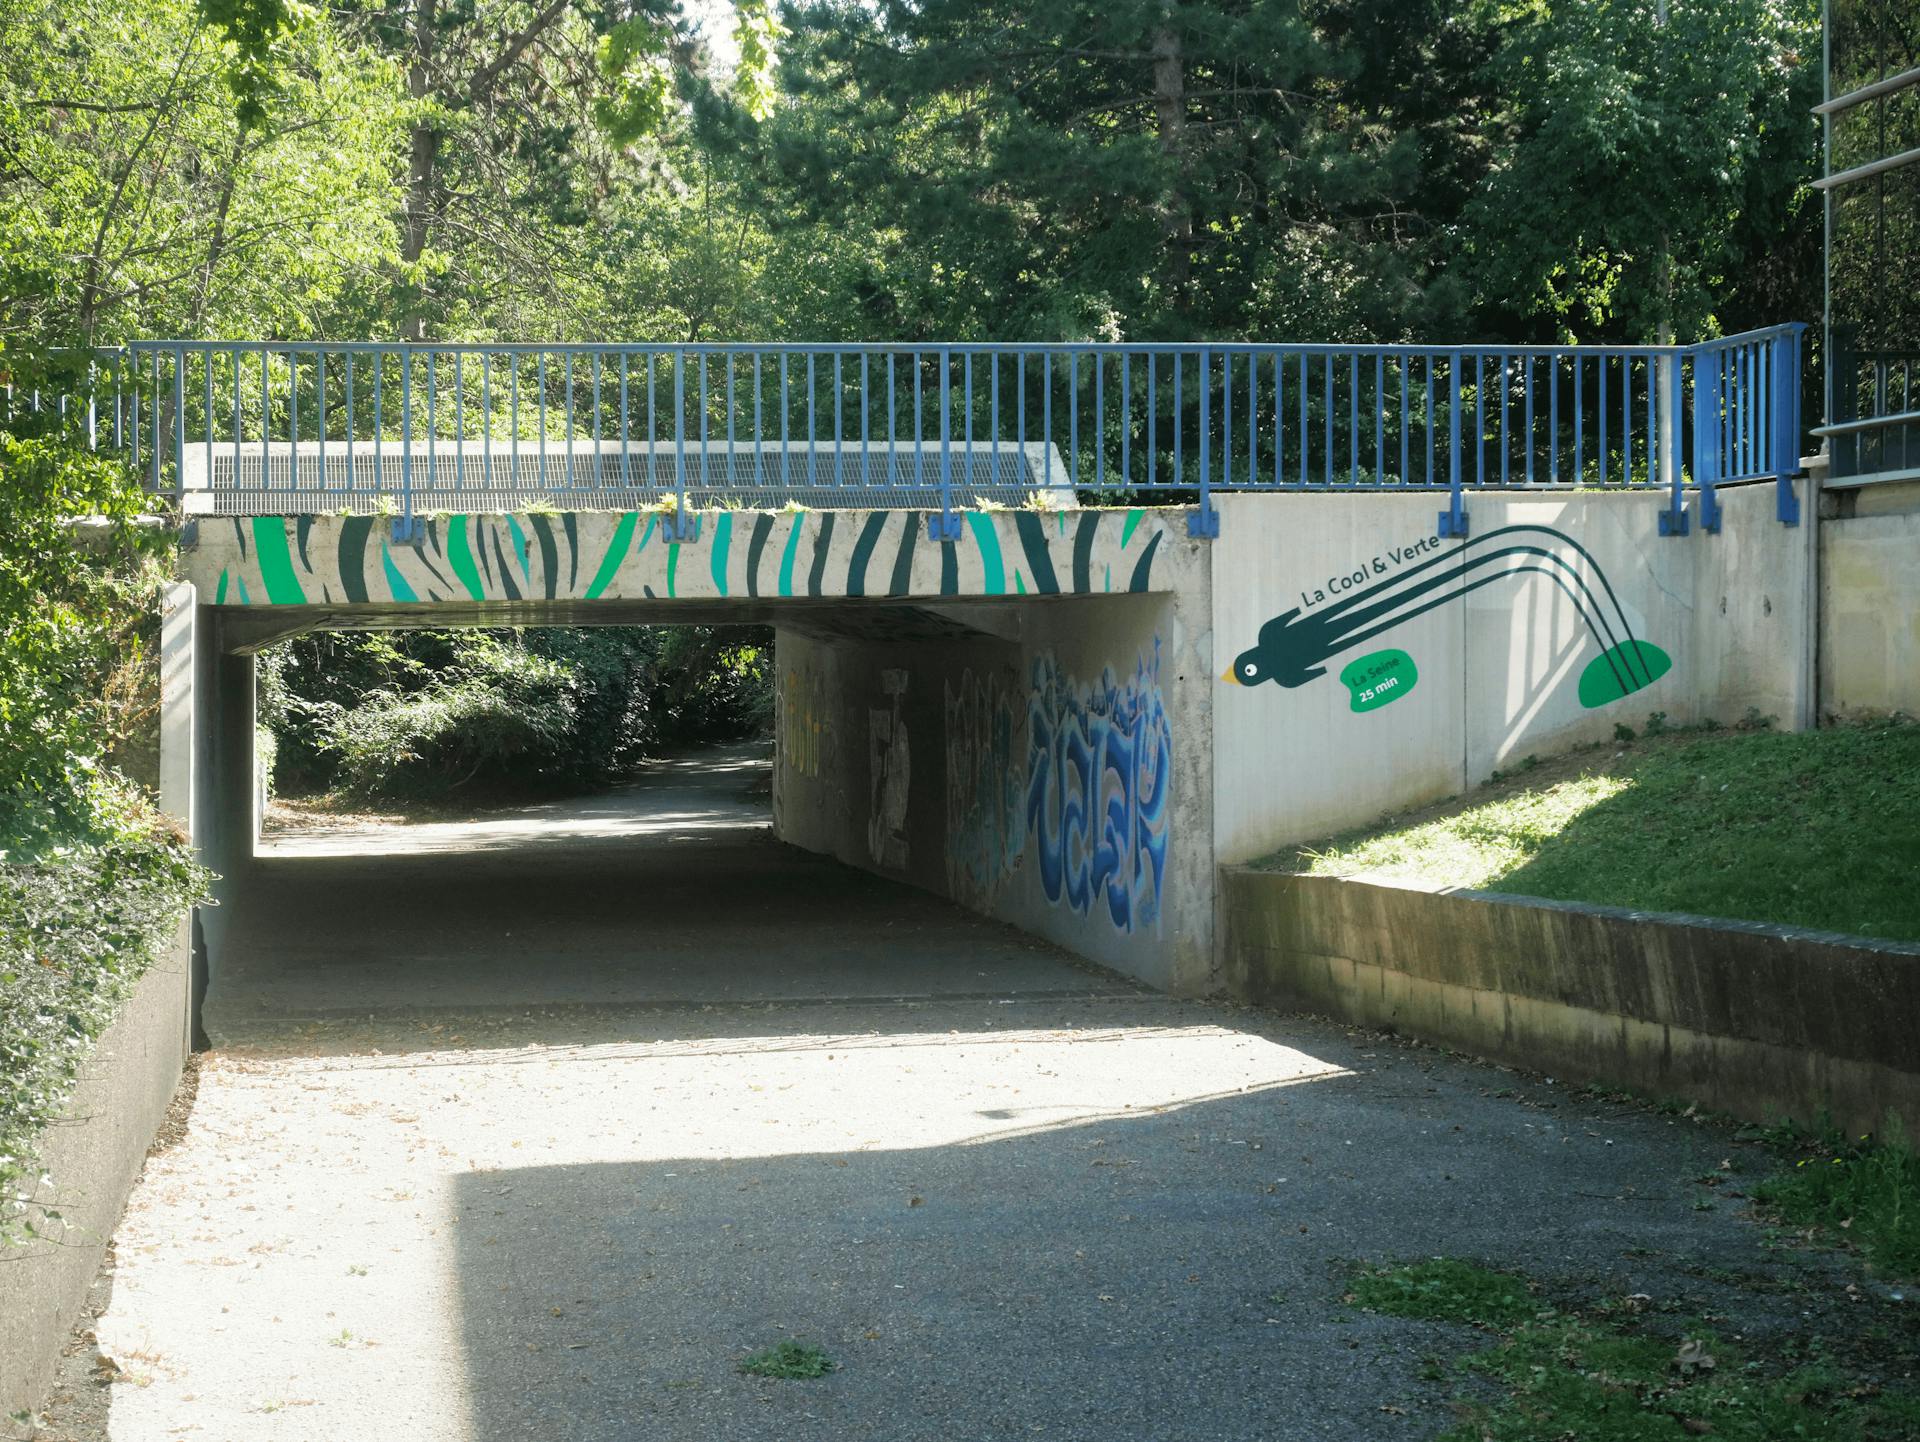 Le parcours de la Cool&Verte, représenté par des motifs peints sous un pont, menant vers la Seine. On aperçoit une signalétique indiquant que la Seine se trouve à 25 minutes à pieds de ce lieu.